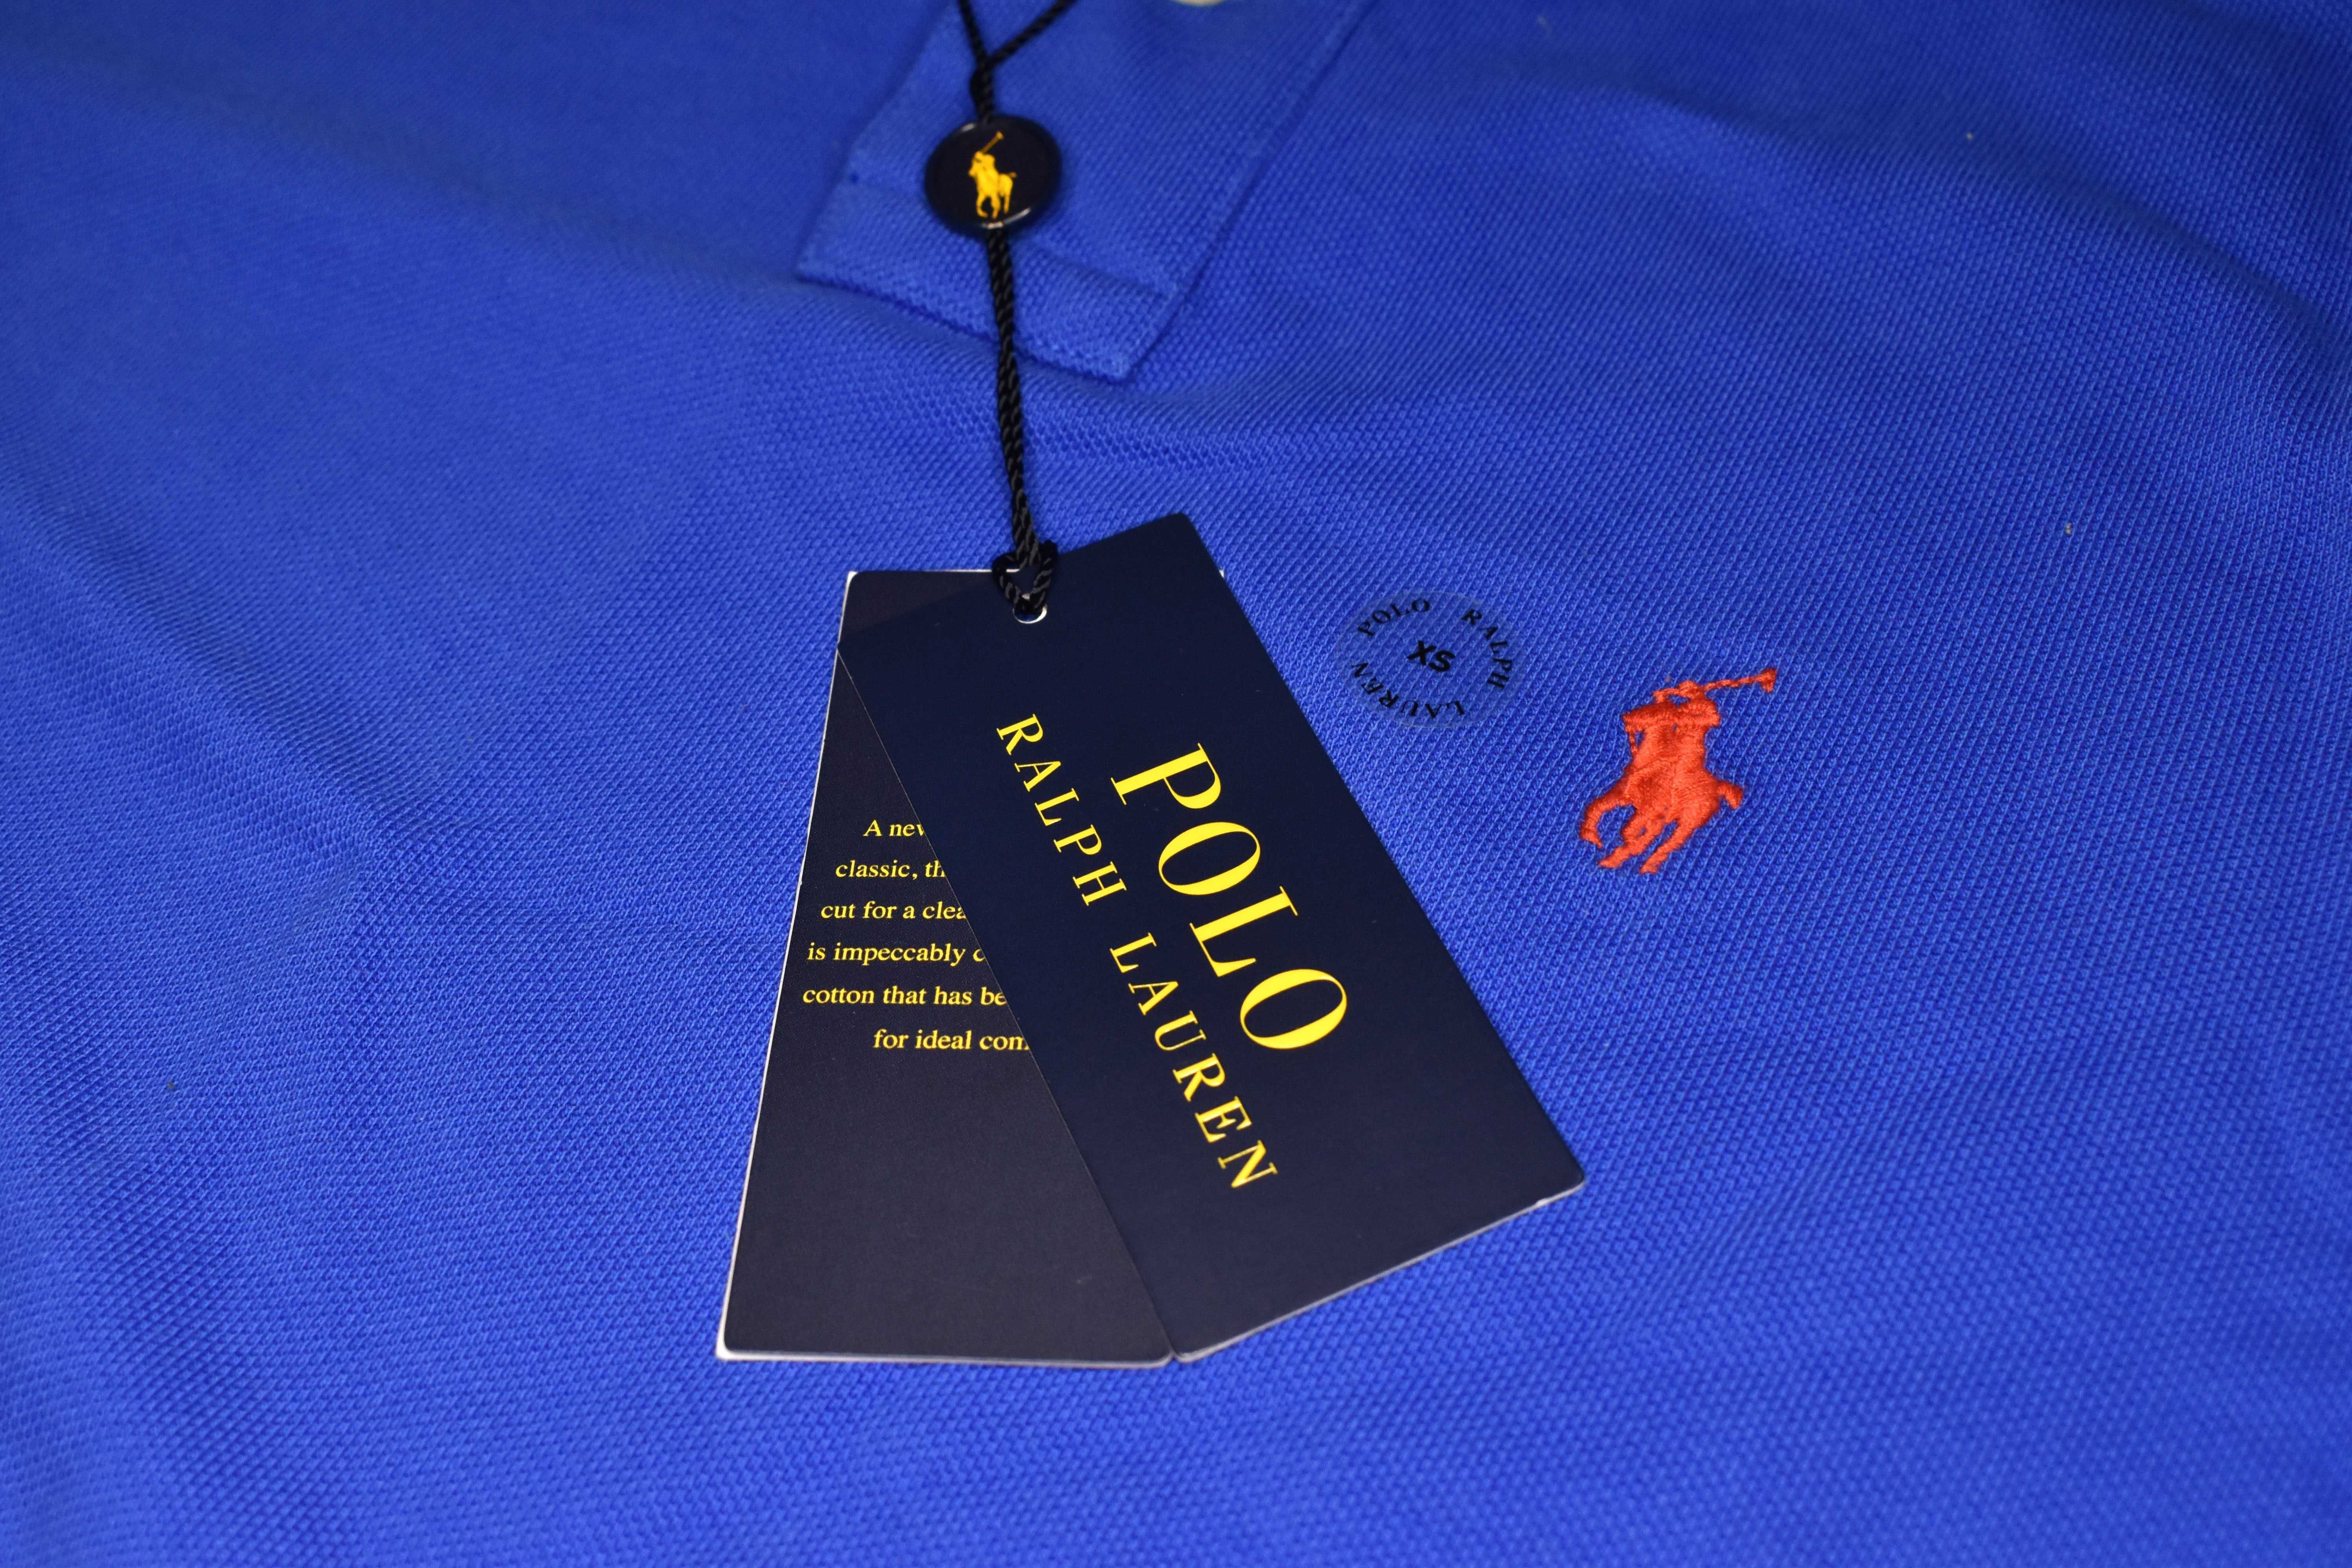 НОВА! Мъжка Тениска Polo Ralph Lauren - С етикет!